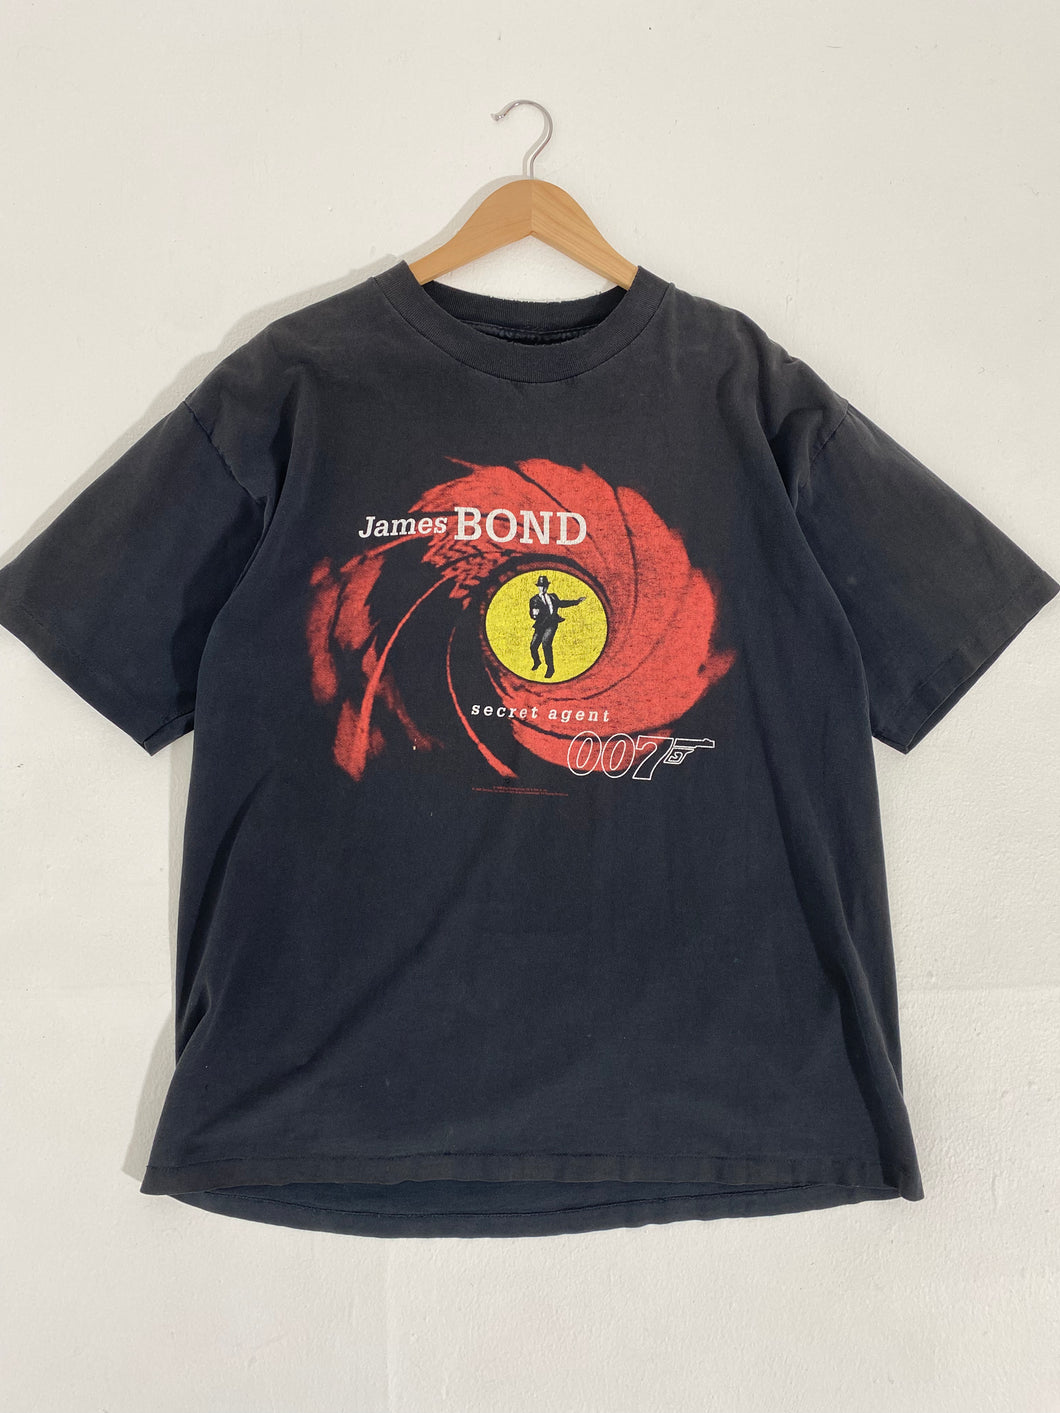 Vintage 1990's Jame Bond 007 Secret Agent T-Shirt Sz. XL